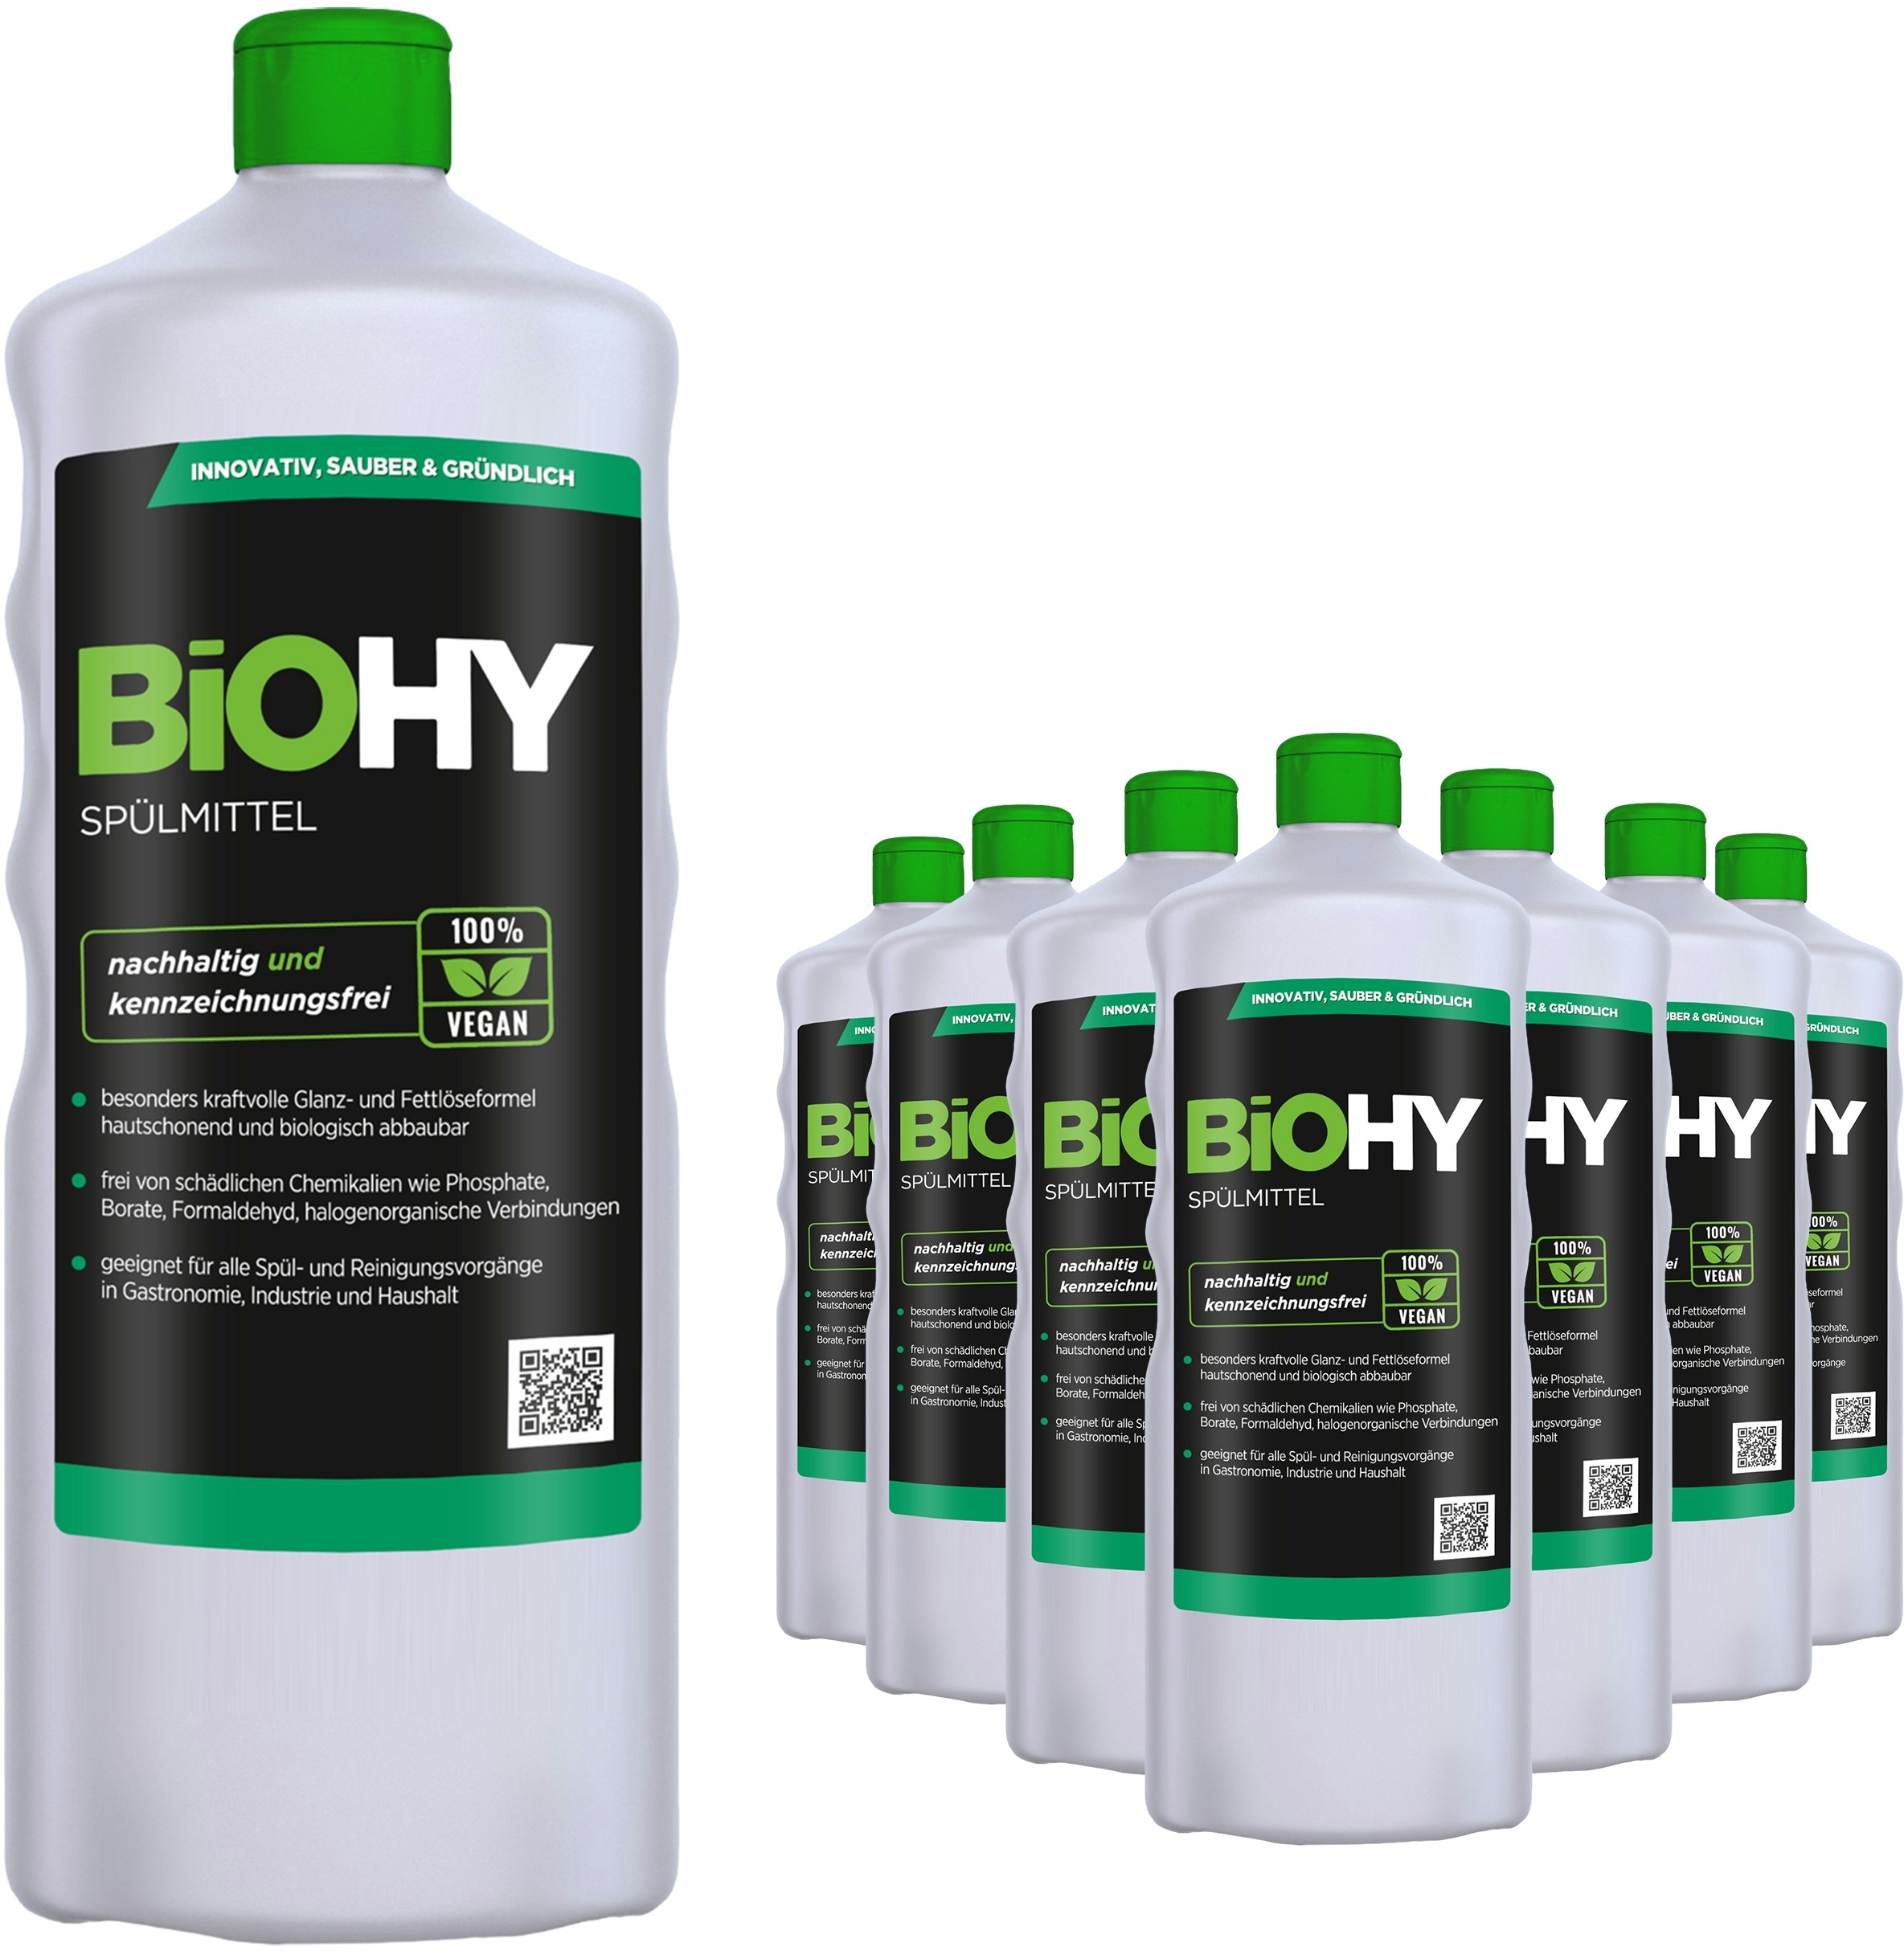 BiOHY Spülmittel (9x1l Flasche) | Frei von schädlichen Chemikalien & biologisch abbaubar | Glanz- & Fettlöseformel